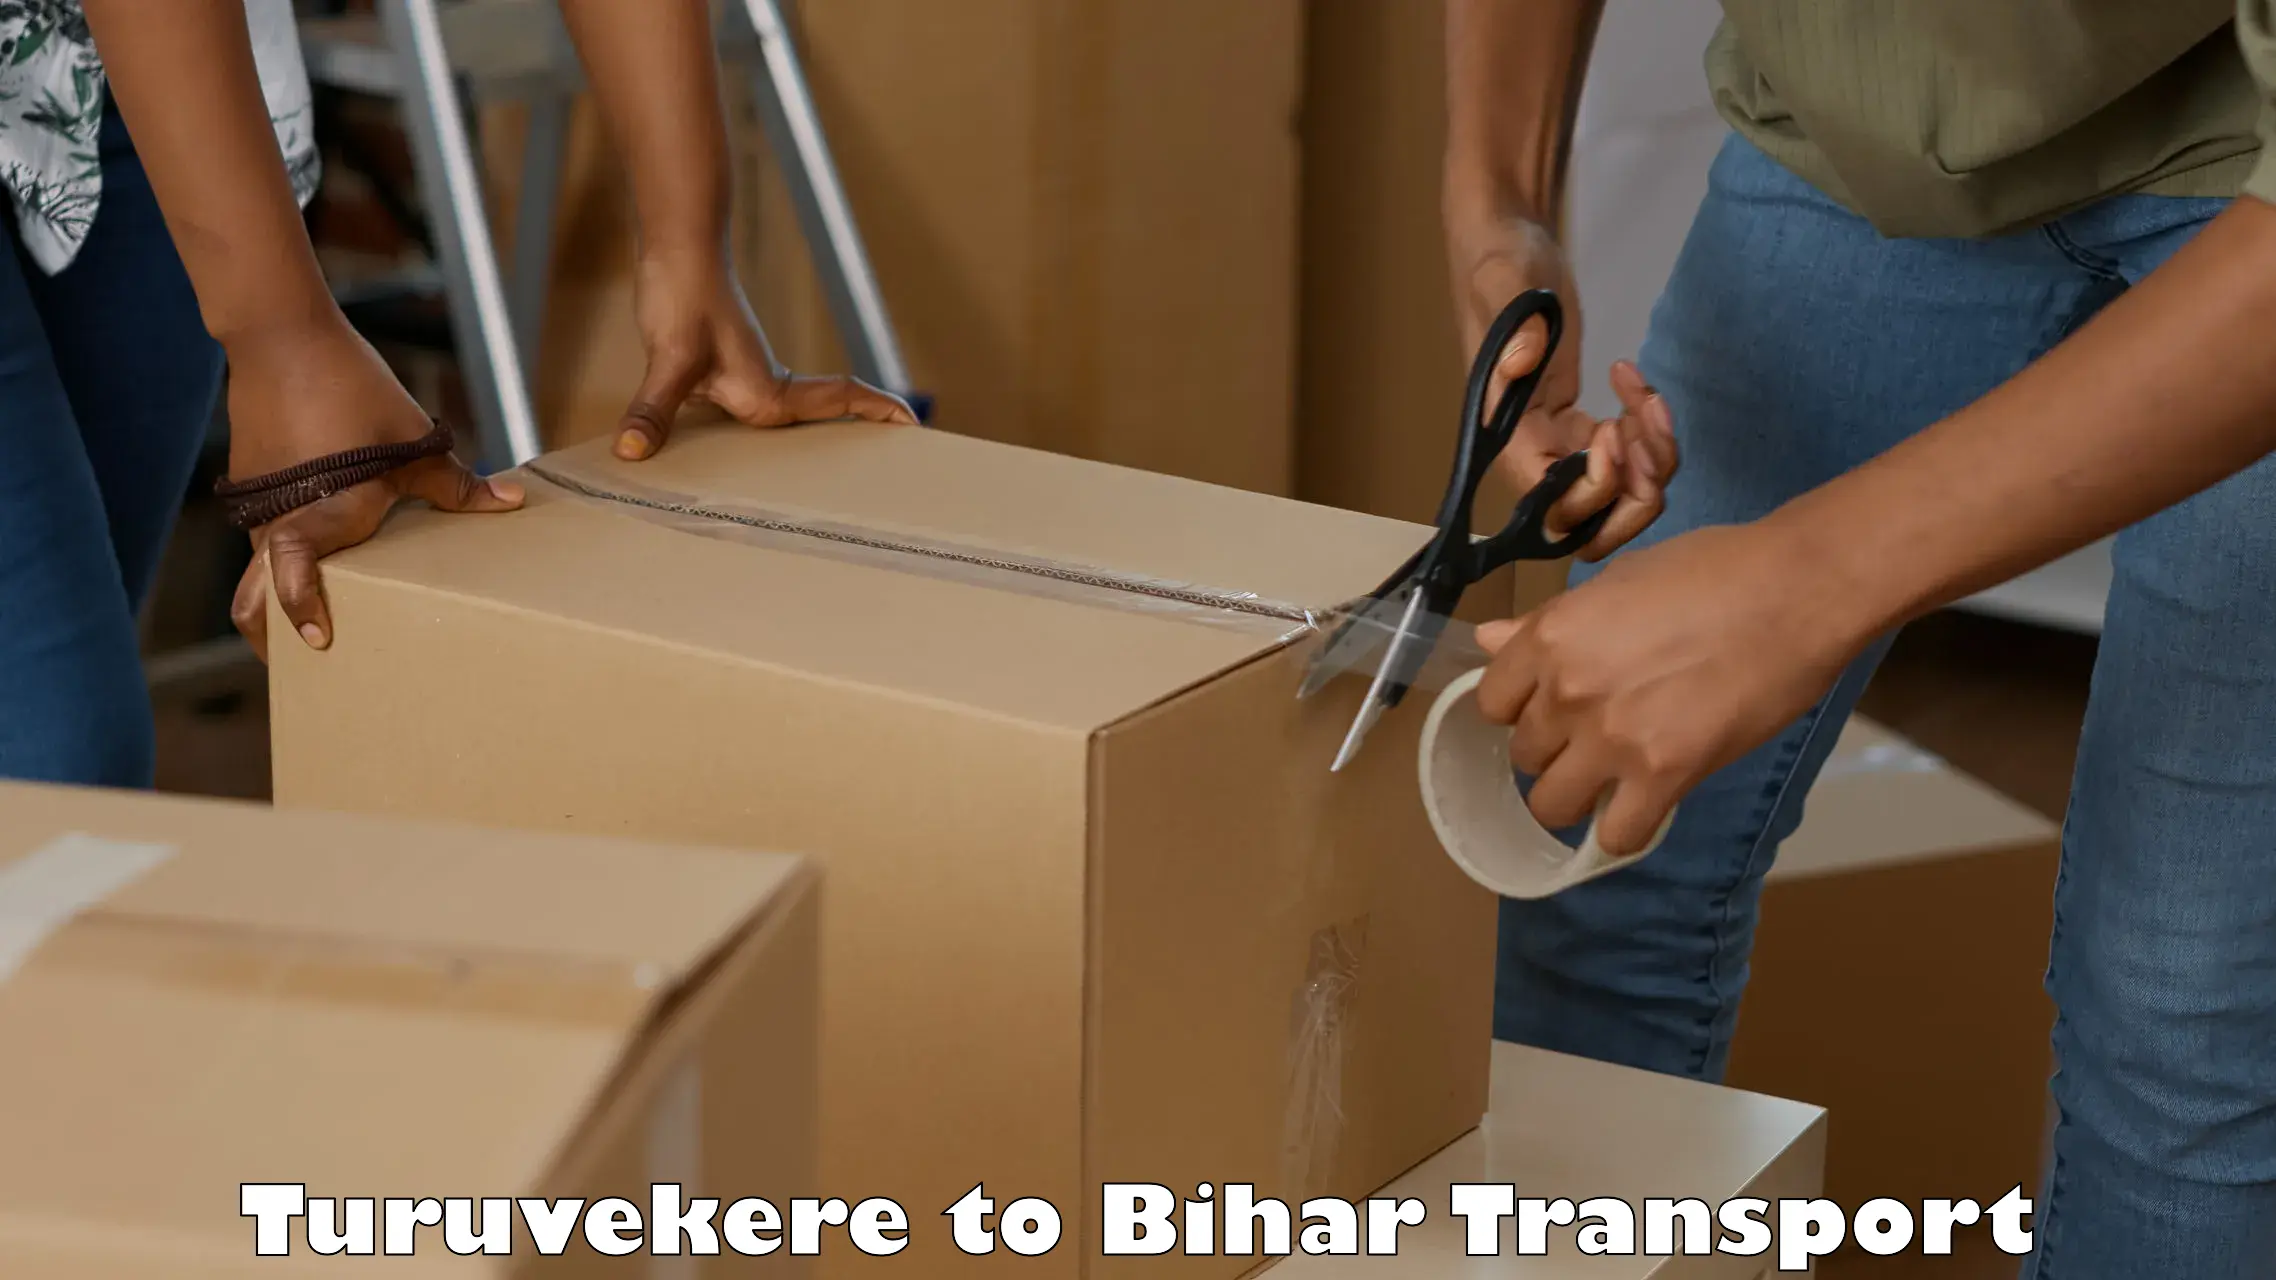 Two wheeler transport services Turuvekere to Katihar